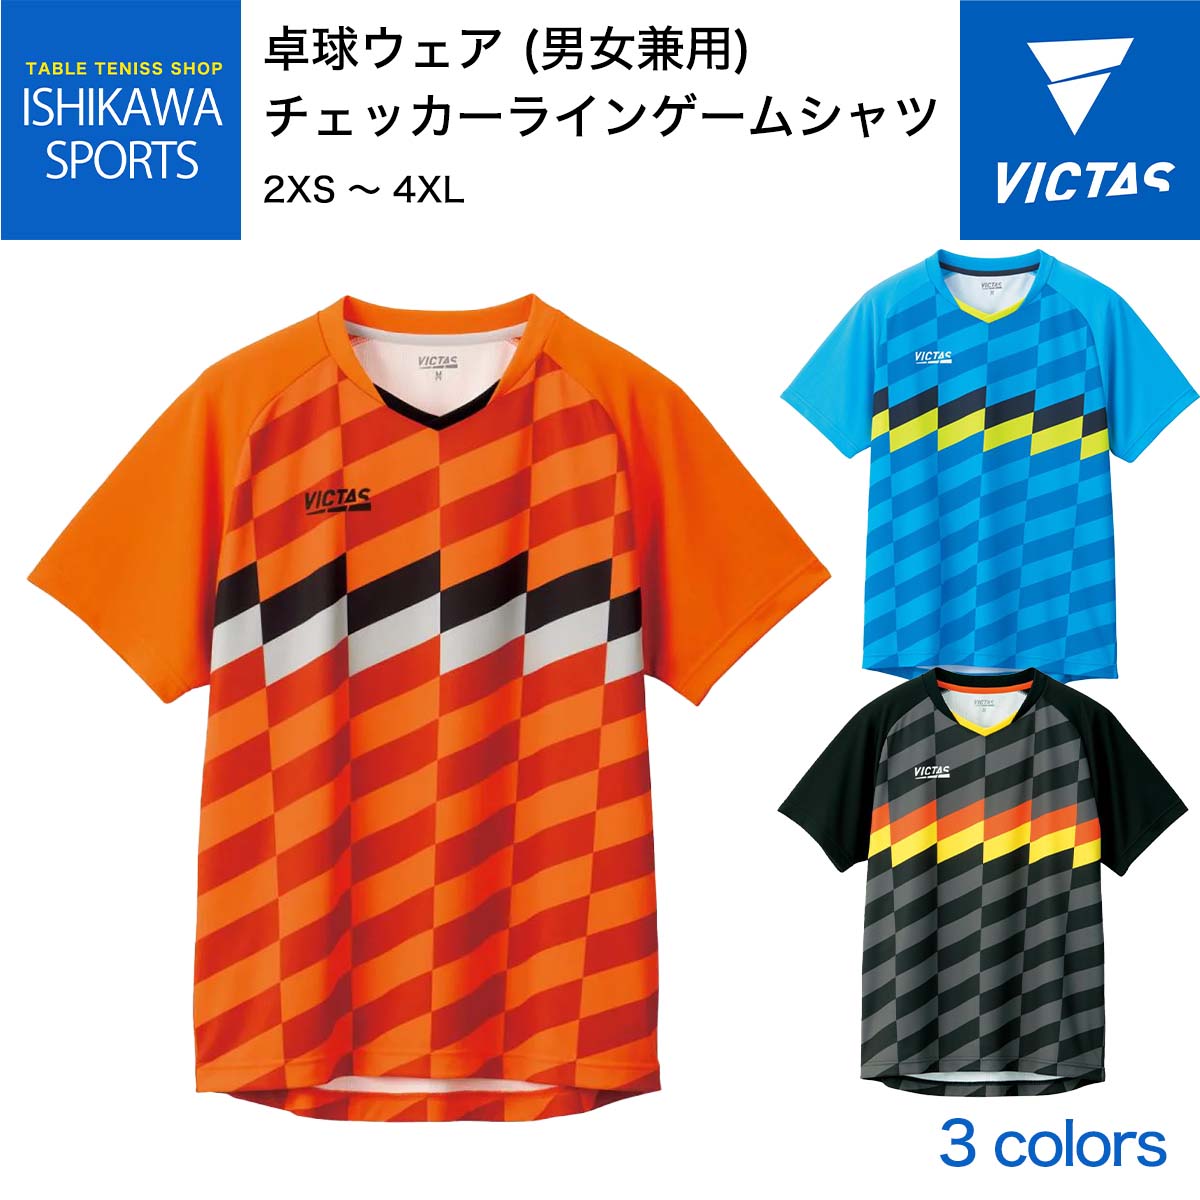 チーム割引可能 チェッカーラインゲームシャツ VICTAS 卓球 ユニフォーム 全国送料無料